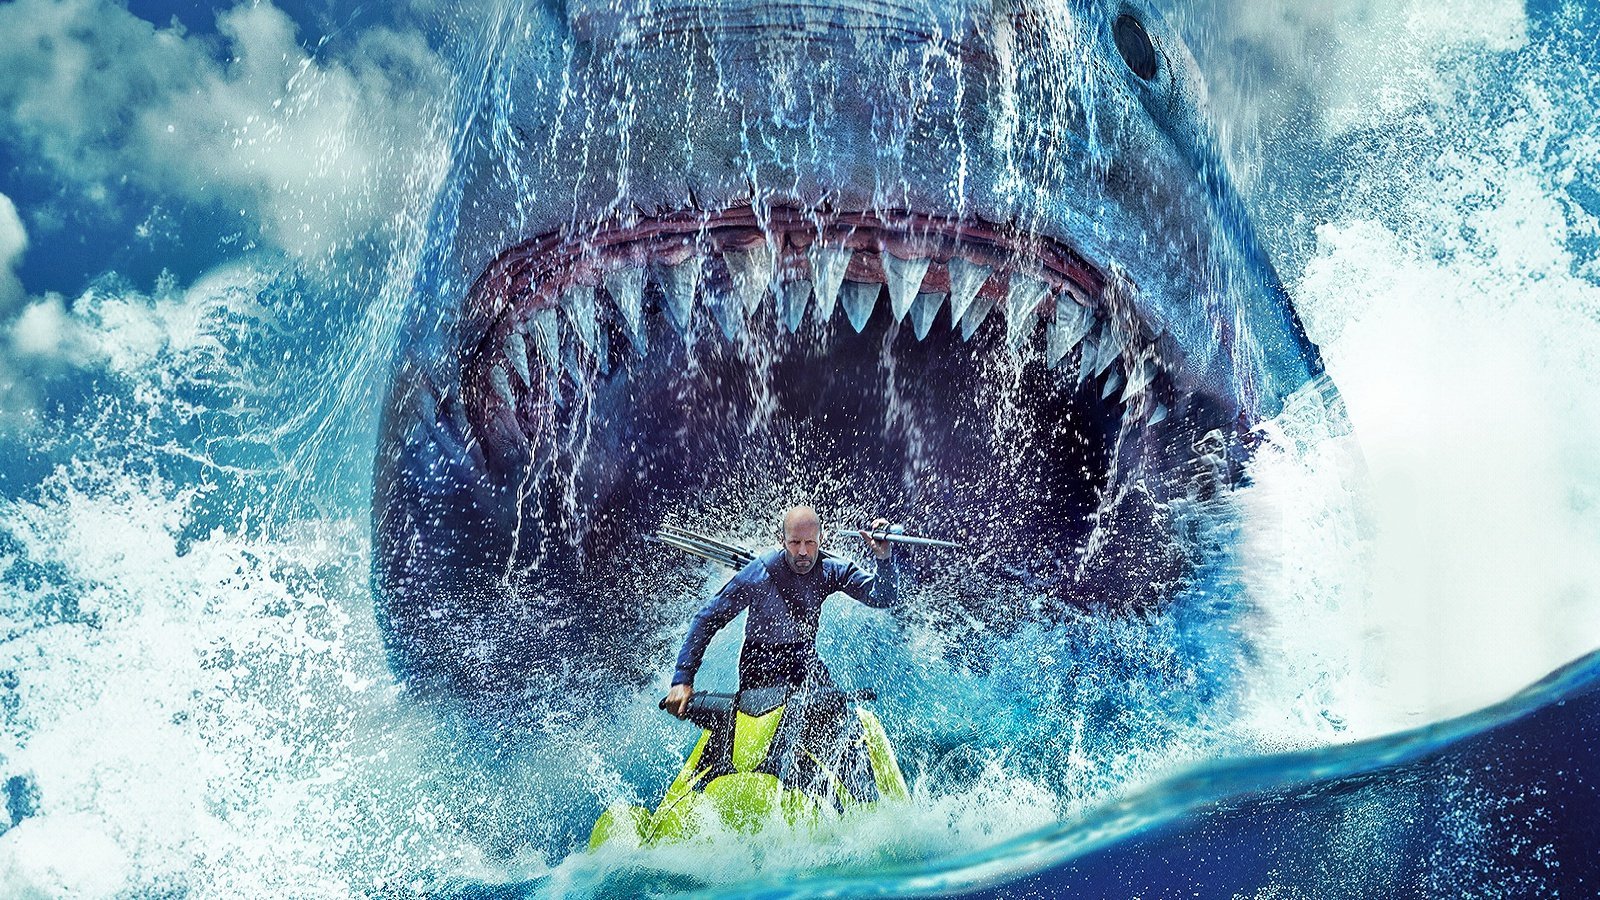 Shark 2 - L'abisso in 4K UHD, la recensione: se il megalodonte ti entra in salotto